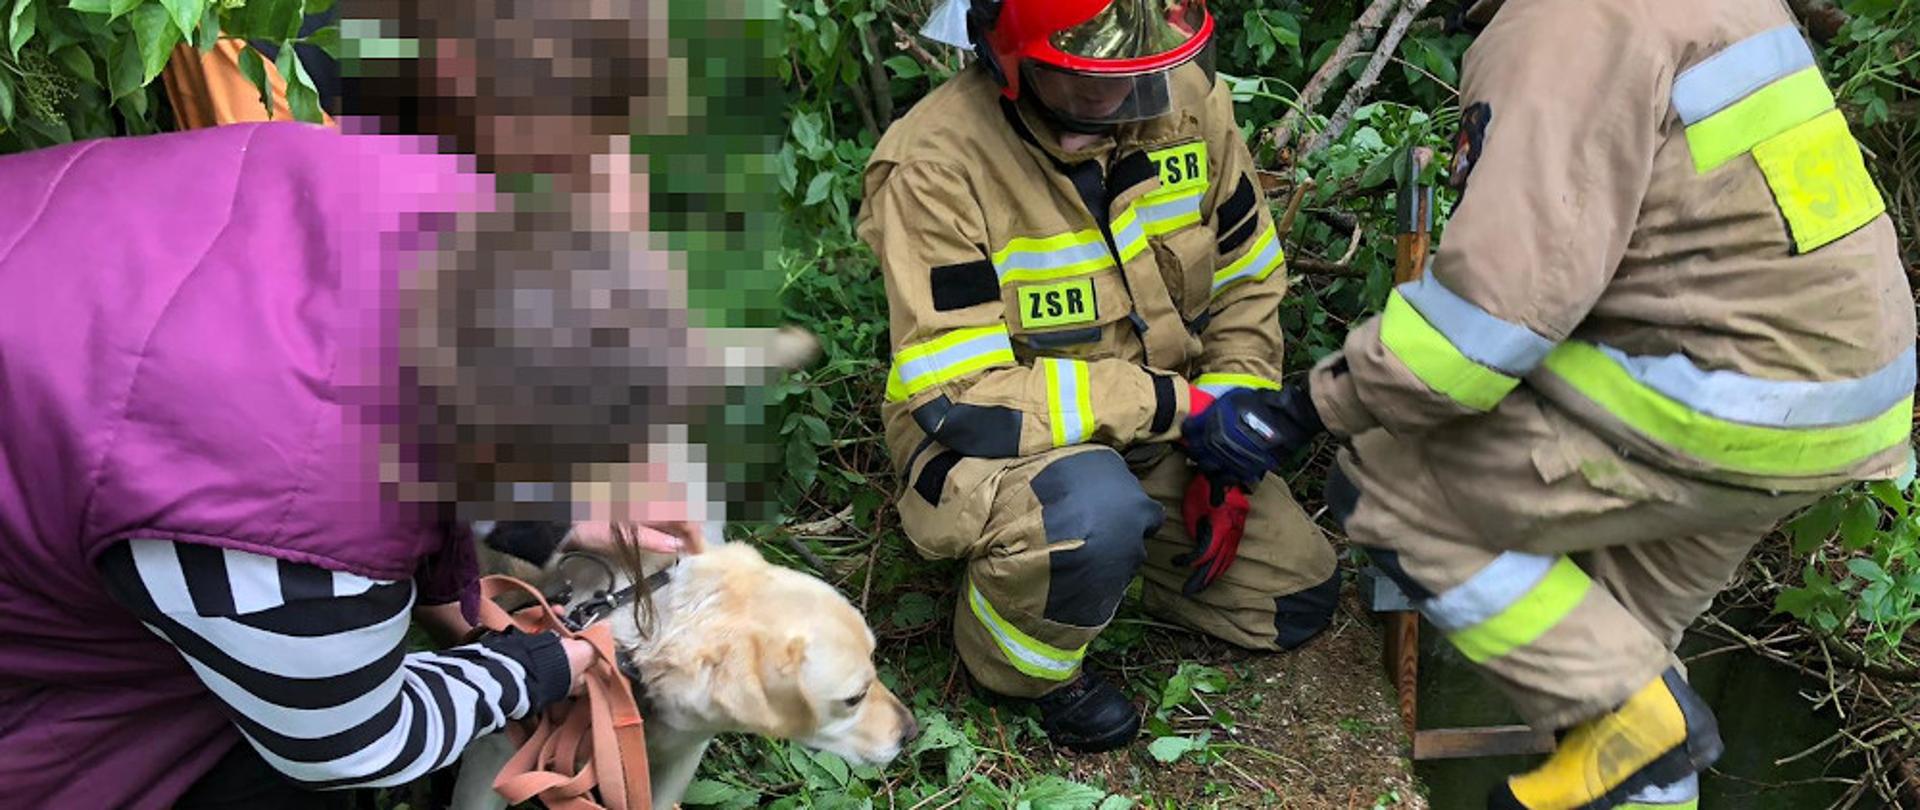 Uwolnienie psa ze studni - strażacy ubrani w ubrania specjalne koloru piaskowego wynieśli psa labradora ze studni i przekazują go właścicielce ubranej w kamizelkę koloru fioletowego, bluzka koloru granatowego w białe paski.